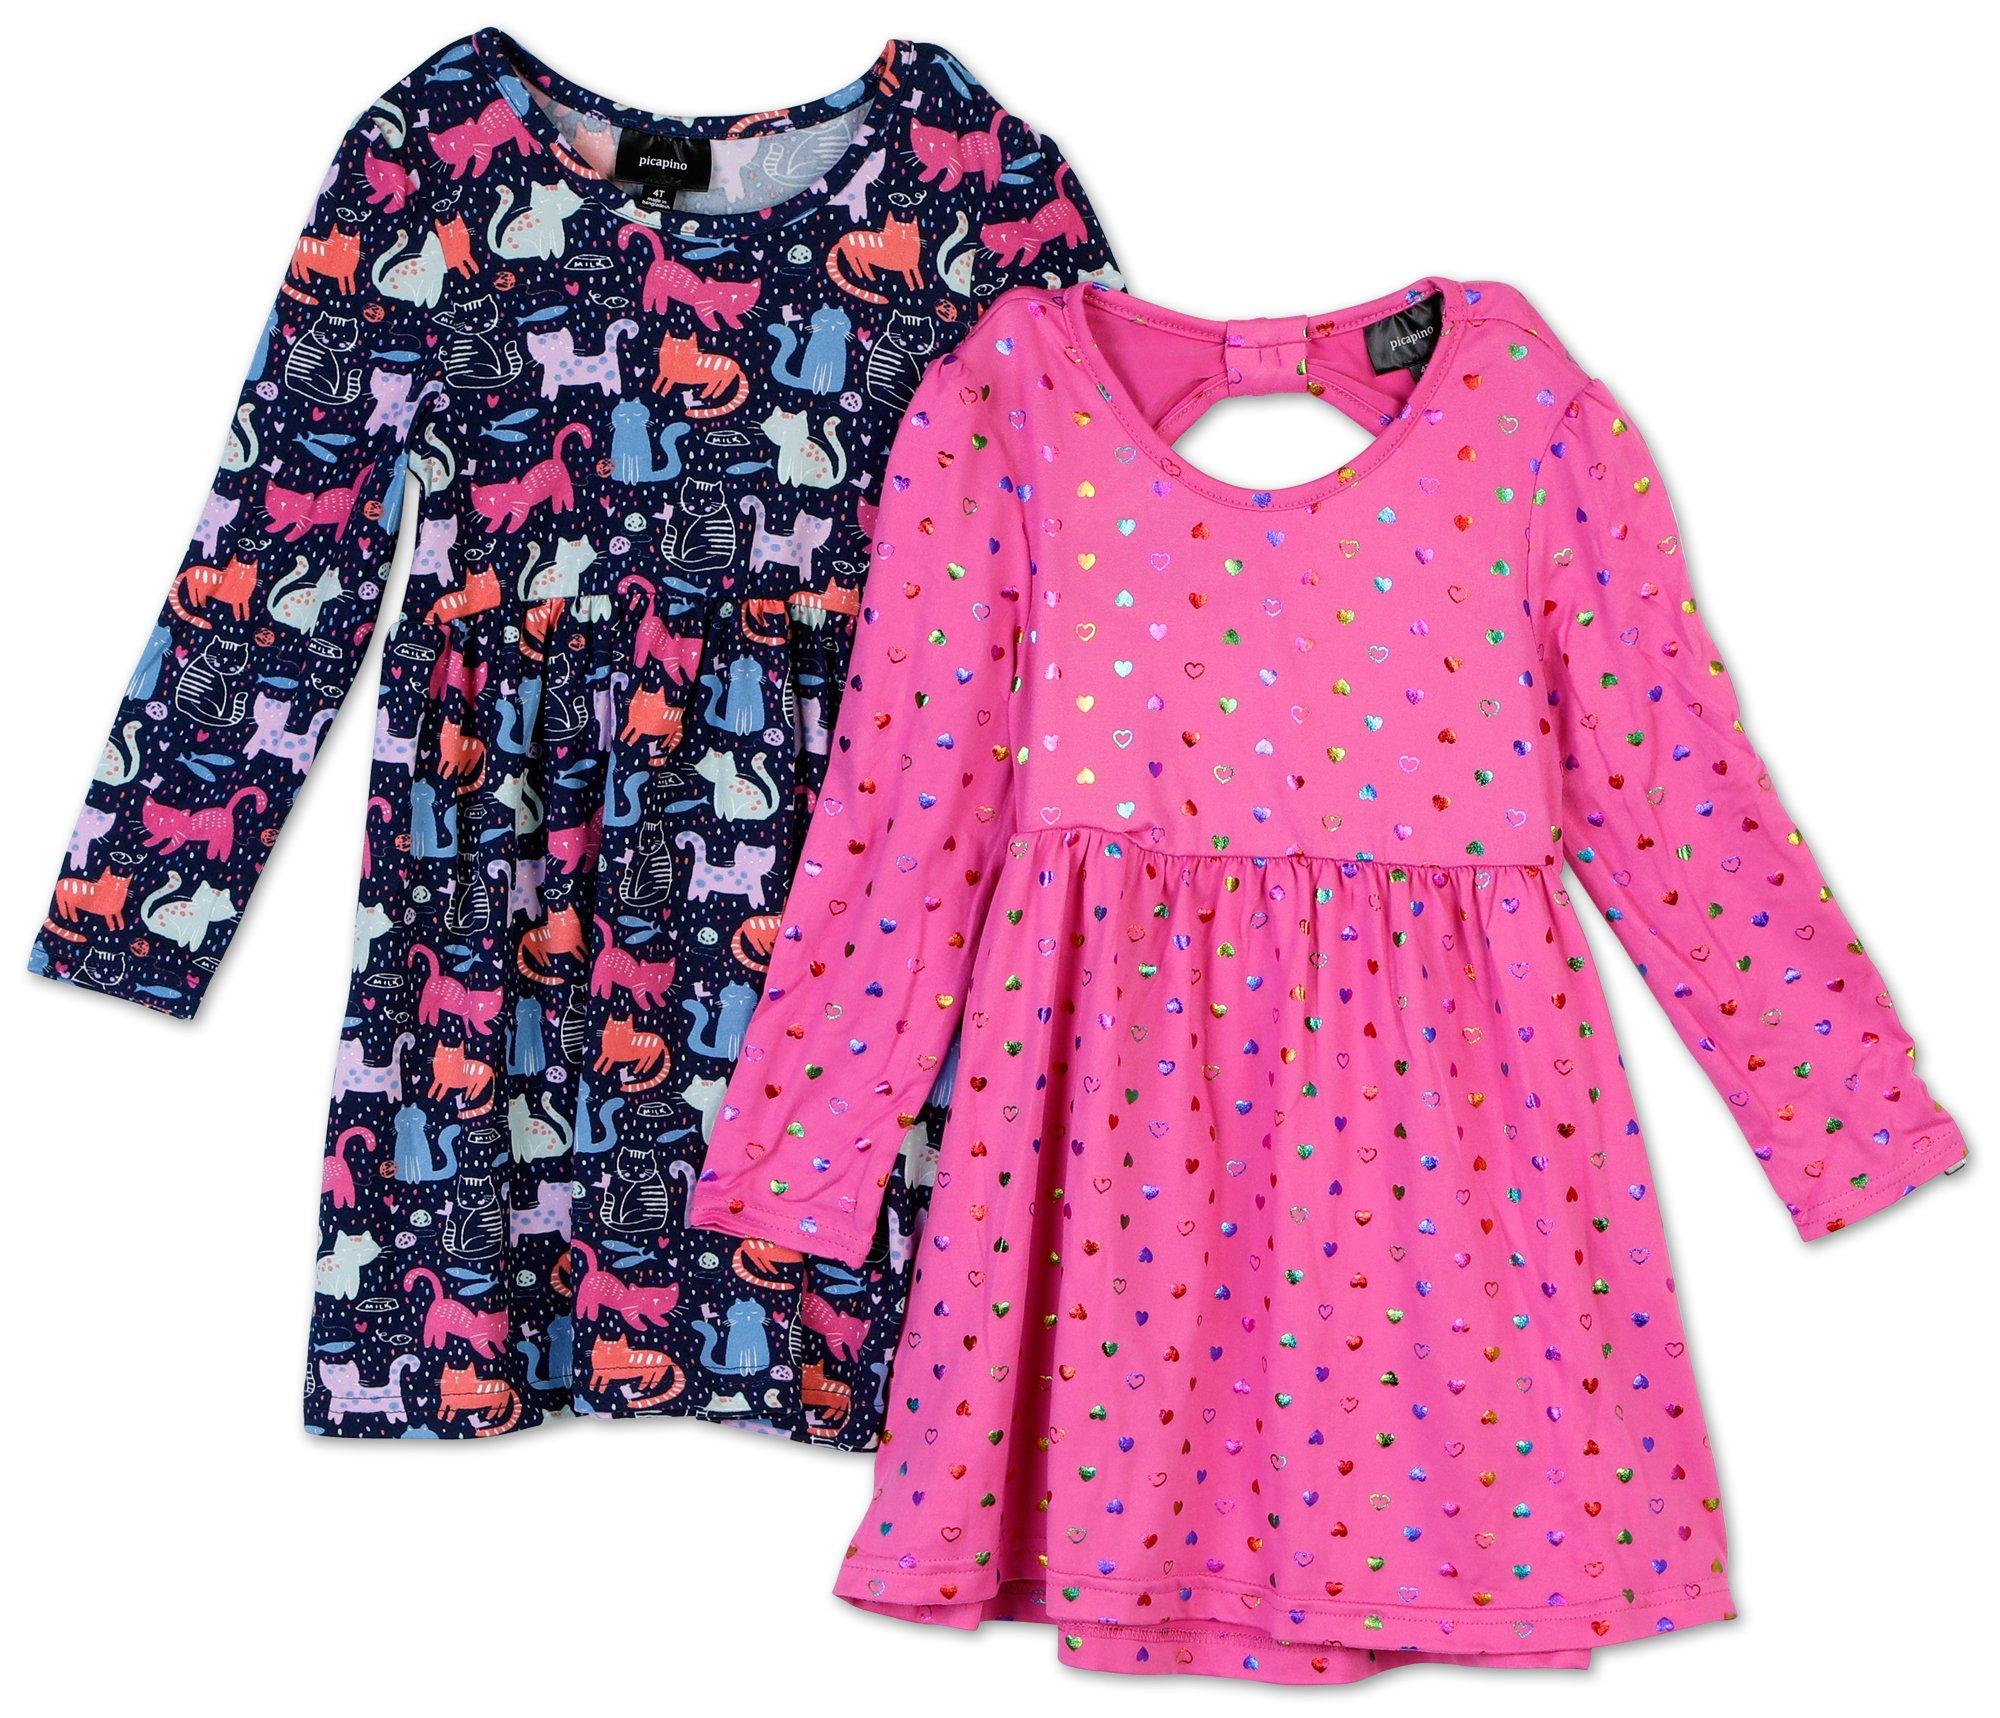 Toddler Girls 2 Pk Fashion Dresses